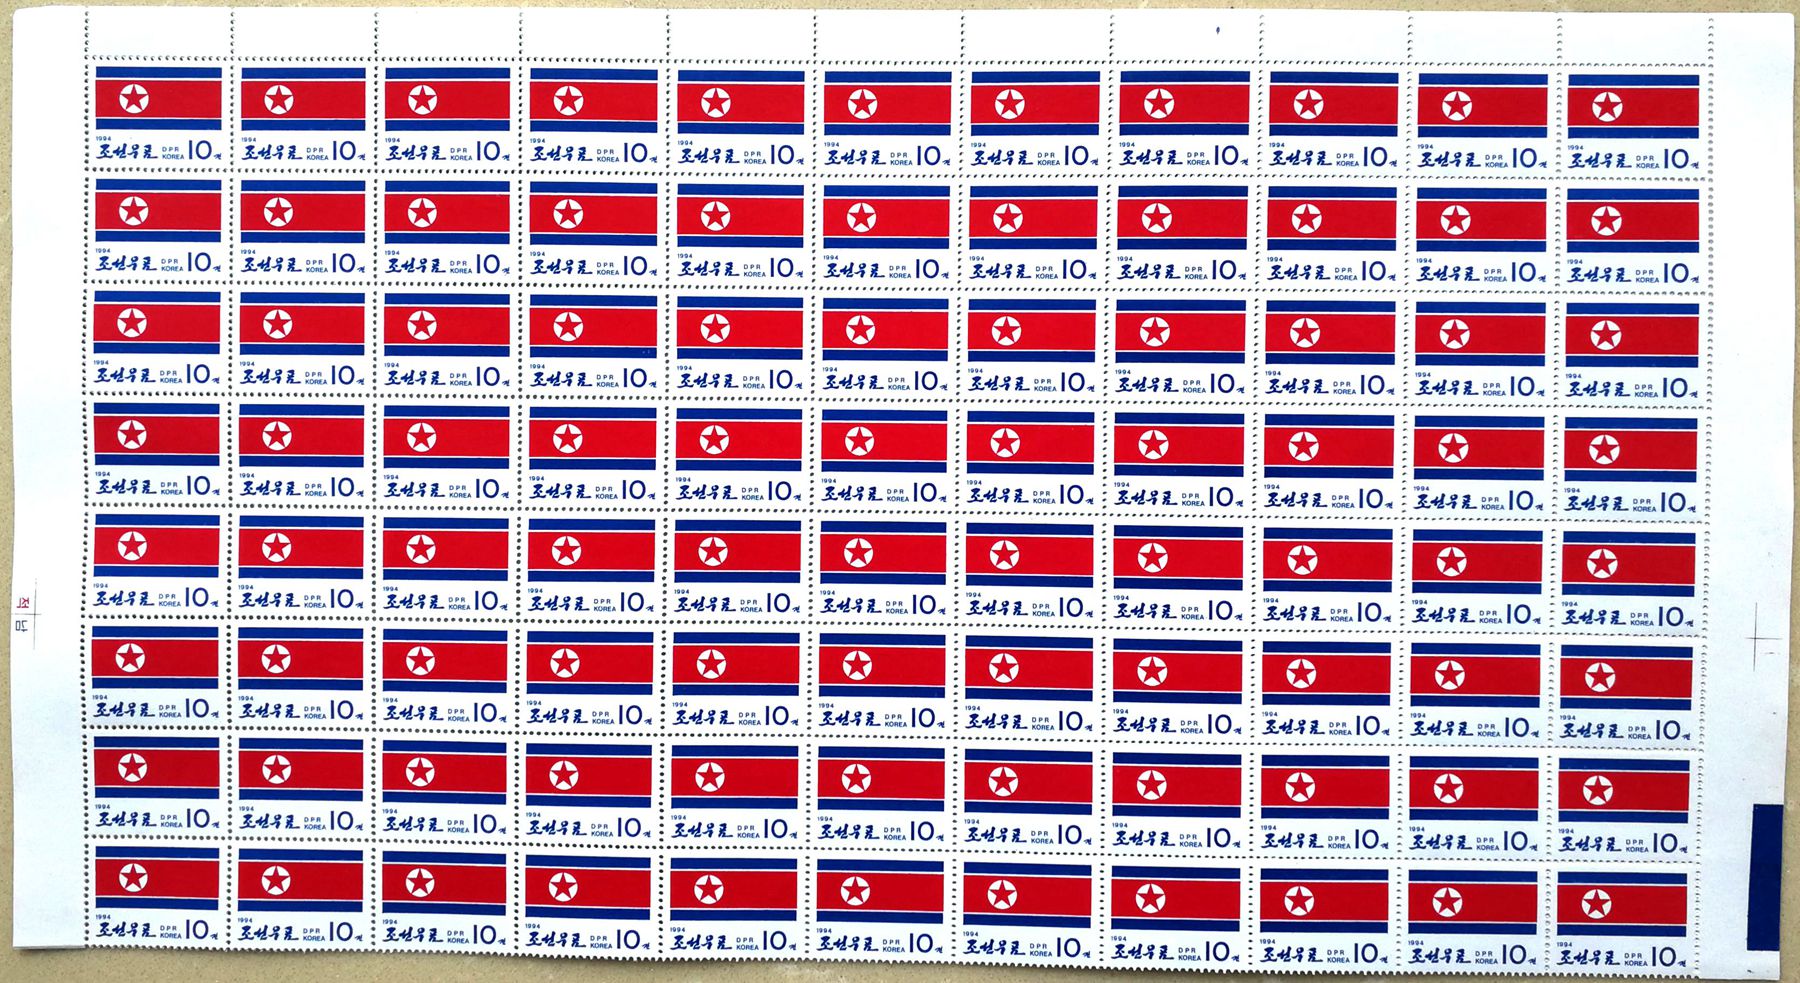 L4422, Korea Large Sheet Stamps of 88 Pcs, "National Flag", 1992